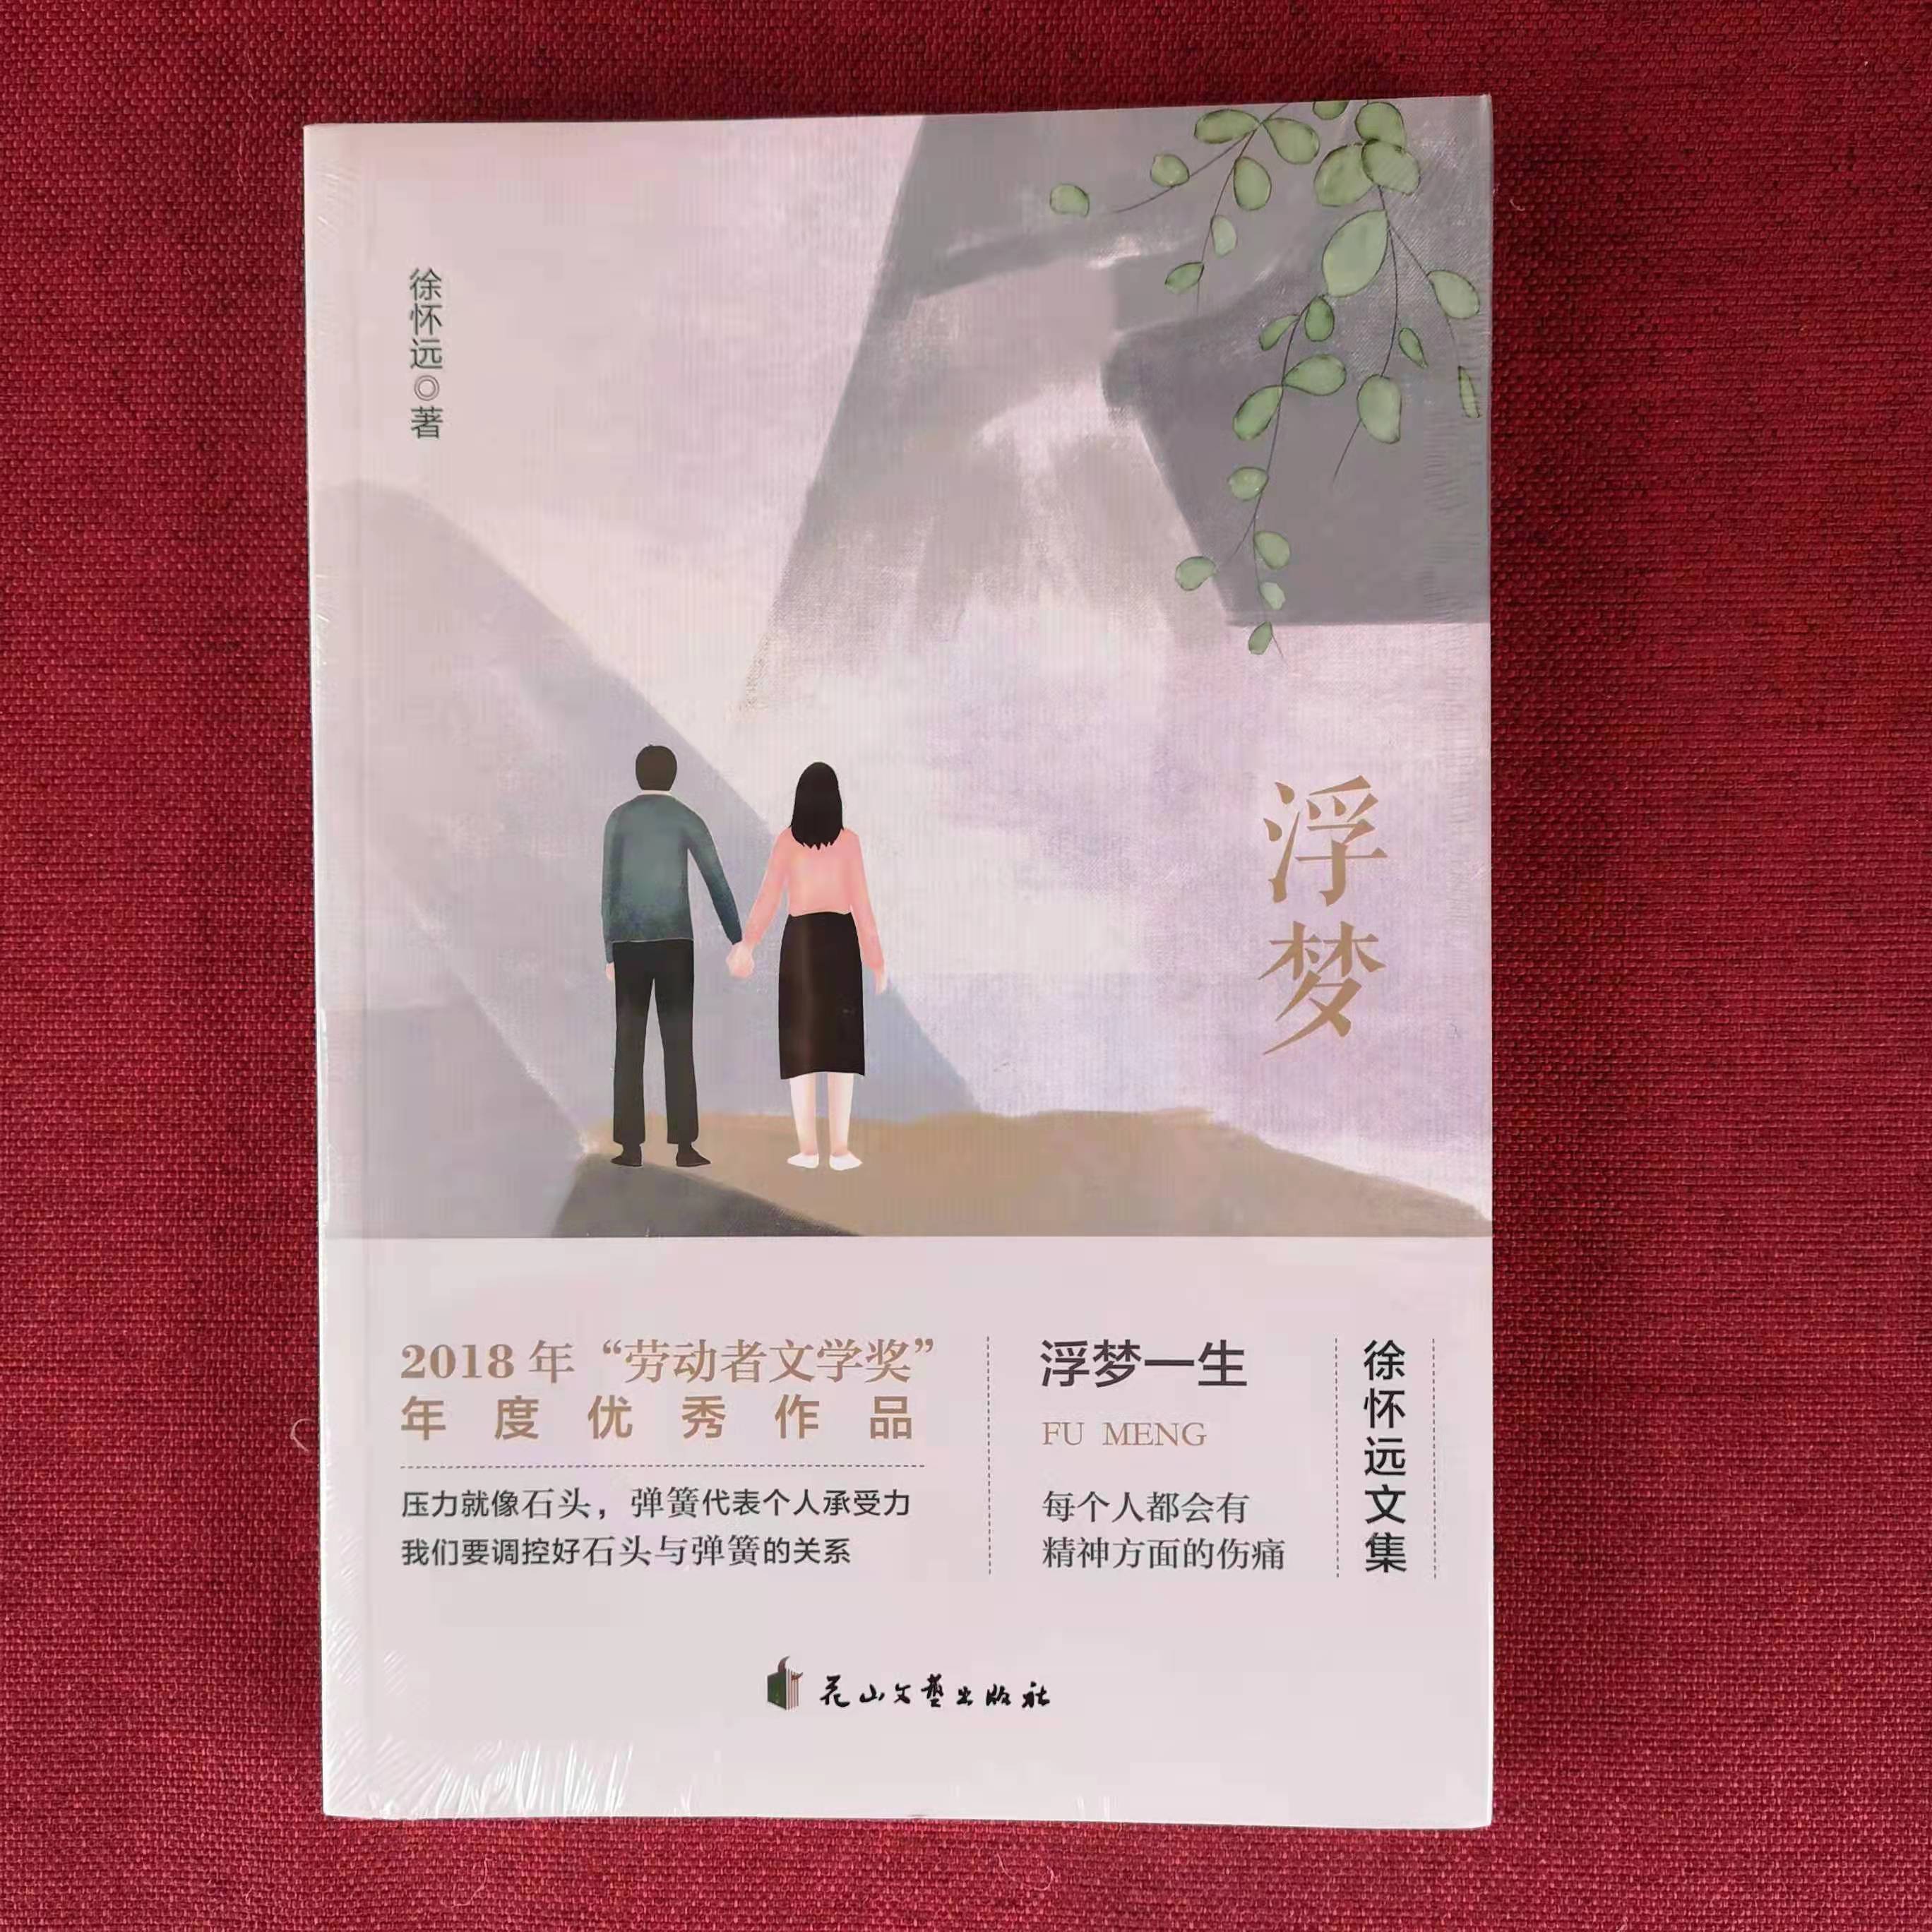 徐怀远长篇精神疾病题材小说《浮梦》出版